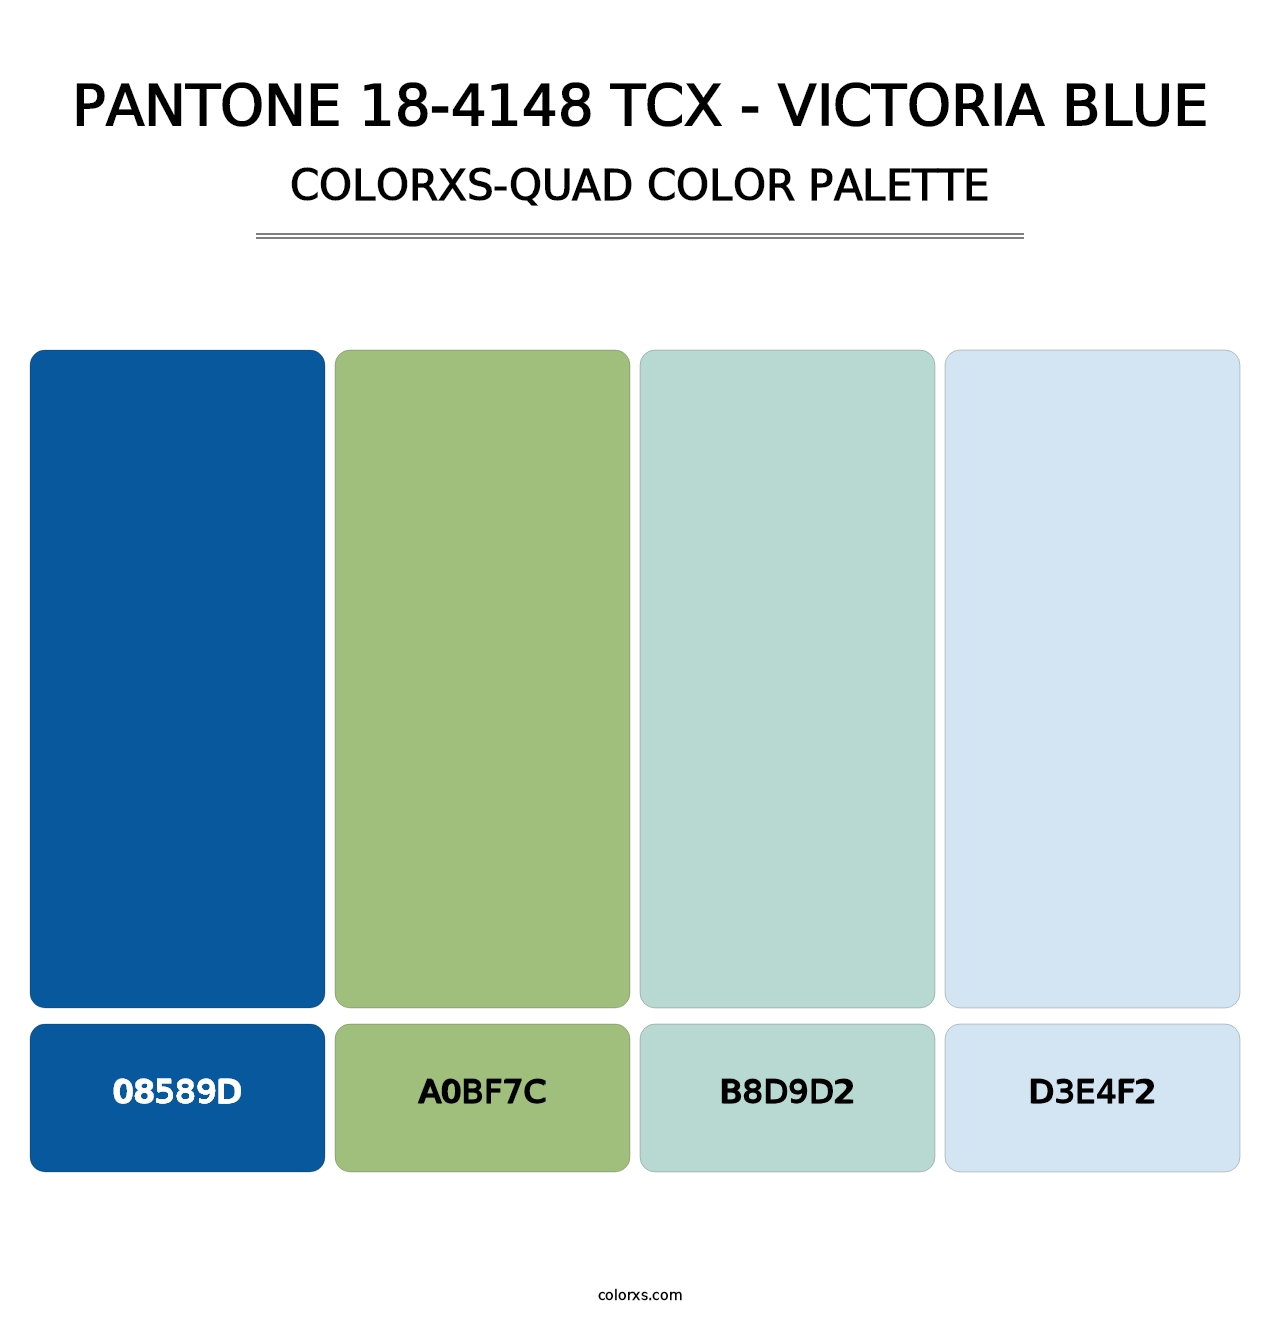 PANTONE 18-4148 TCX - Victoria Blue - Colorxs Quad Palette